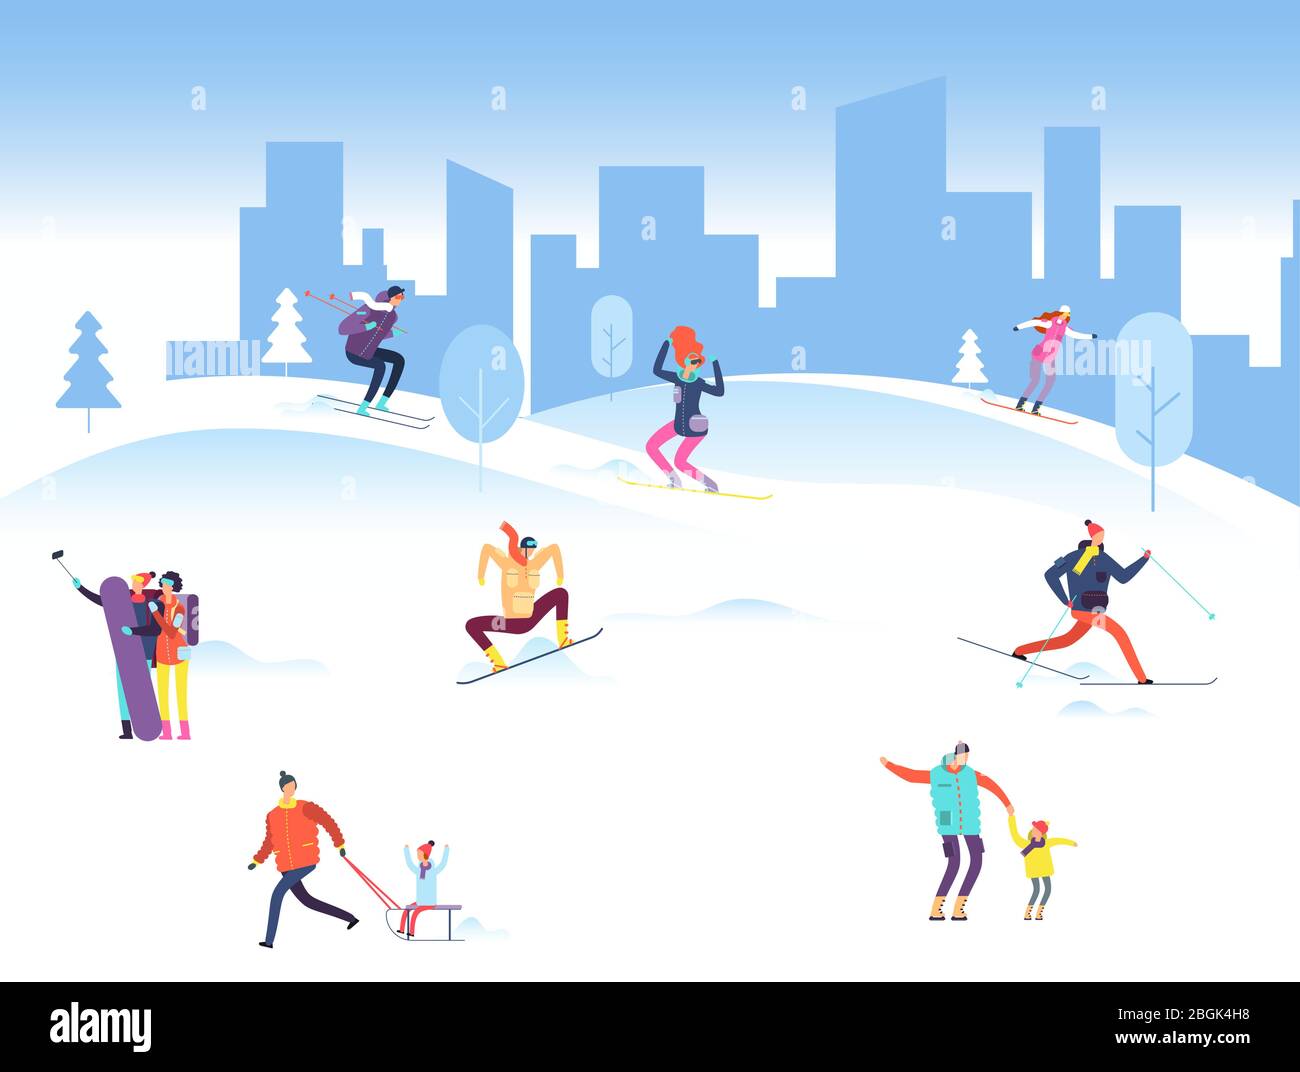 Frohe weihnachten Hintergrund mit Menschen im Winter Park. Familie, Erwachsene und Kinder Snowboarden und Skifahren im Freien. Vektorgrafik. Ski Schnee Menschen, Mountain Snowboarding Stock Vektor